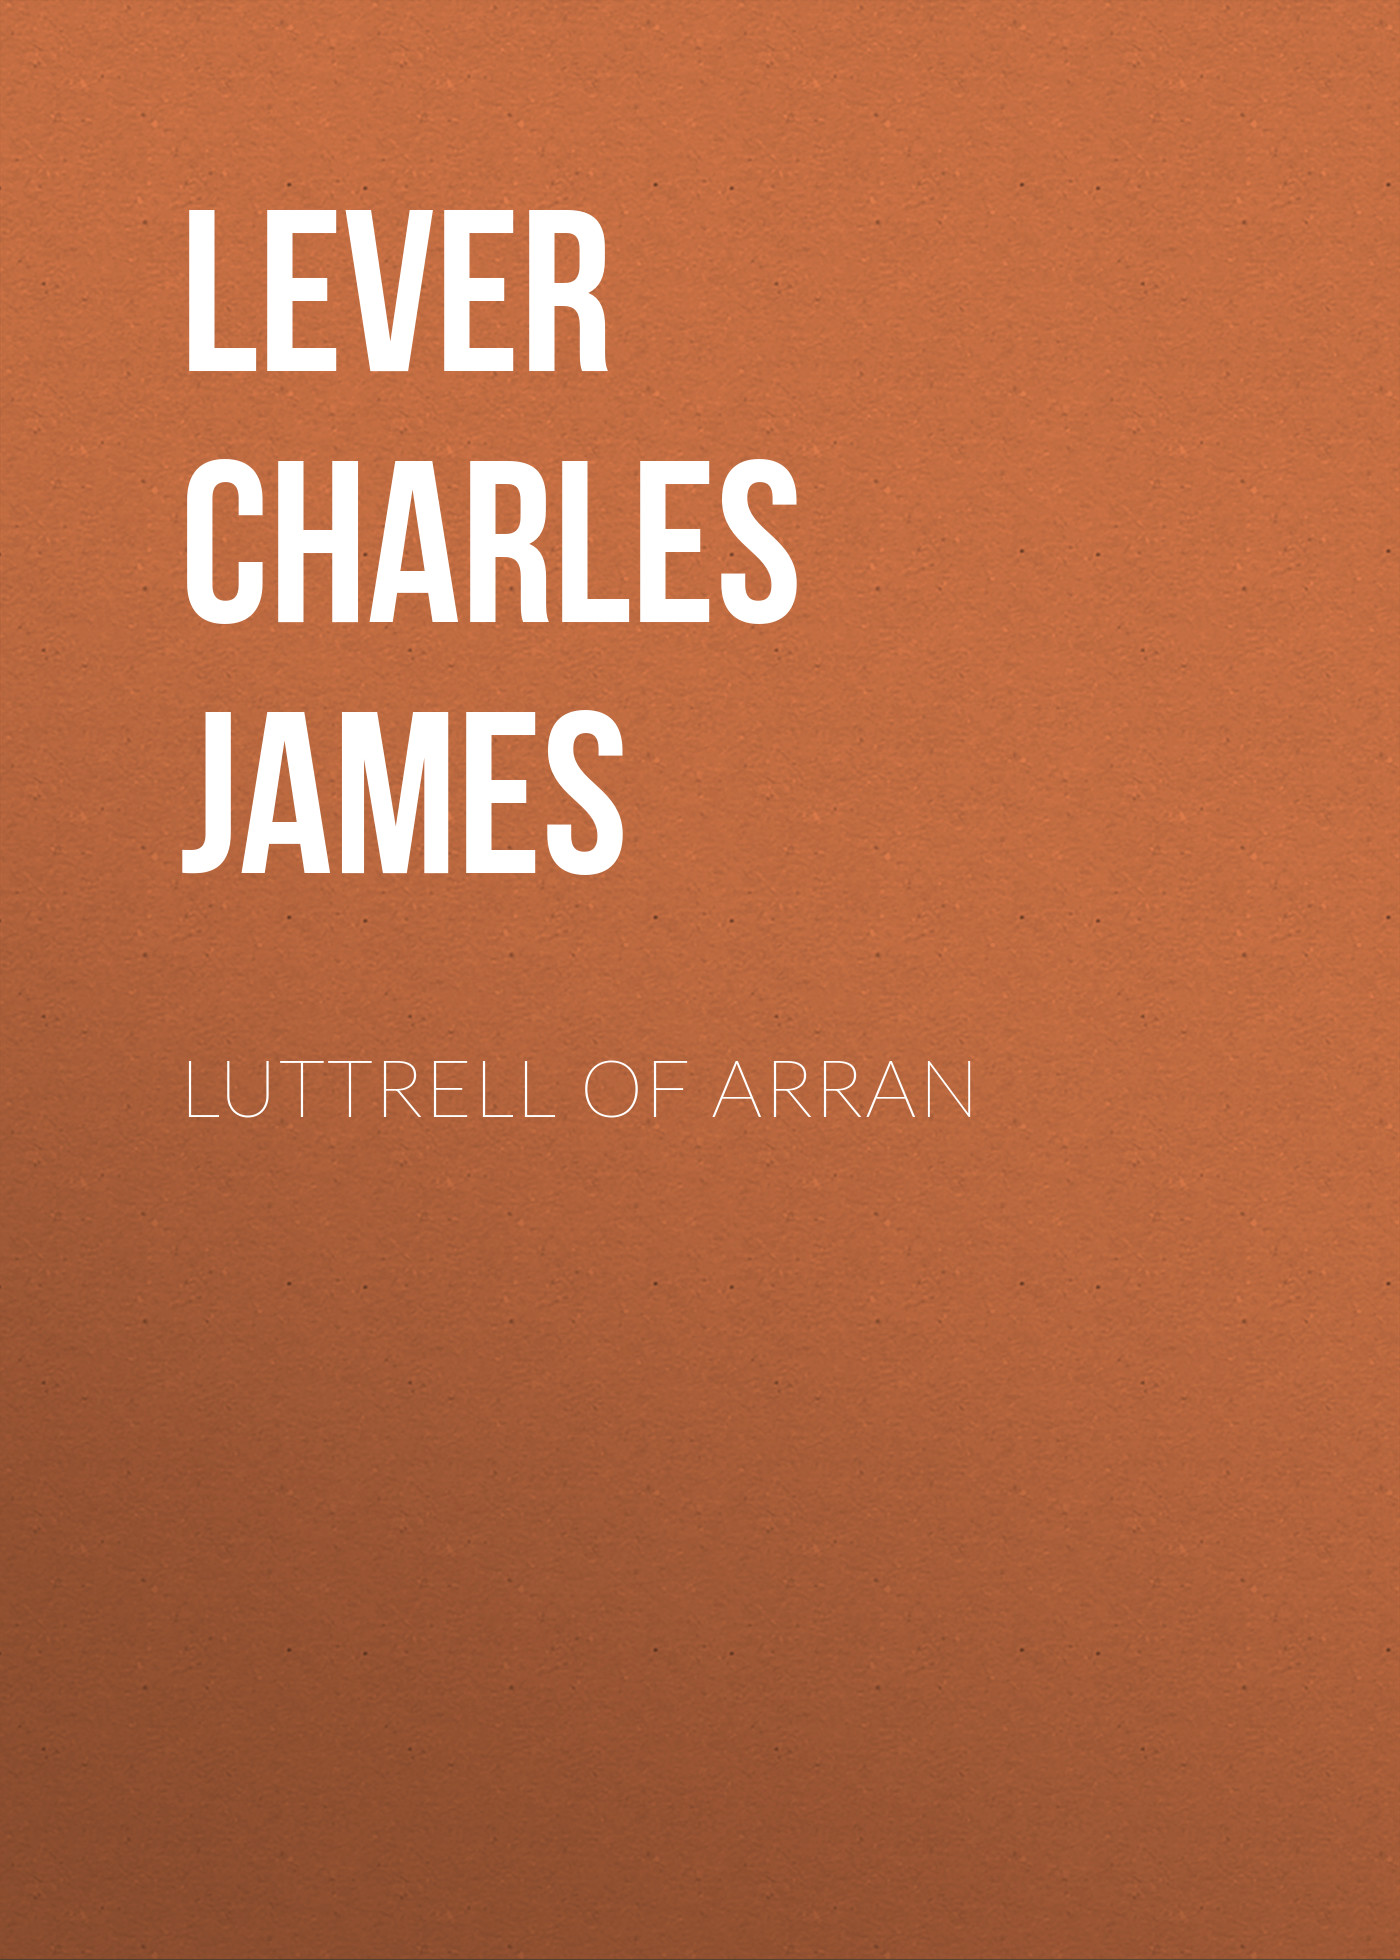 Книга Luttrell Of Arran из серии , созданная Charles Lever, может относится к жанру Зарубежная старинная литература, Зарубежная классика. Стоимость электронной книги Luttrell Of Arran с идентификатором 25450940 составляет 0 руб.